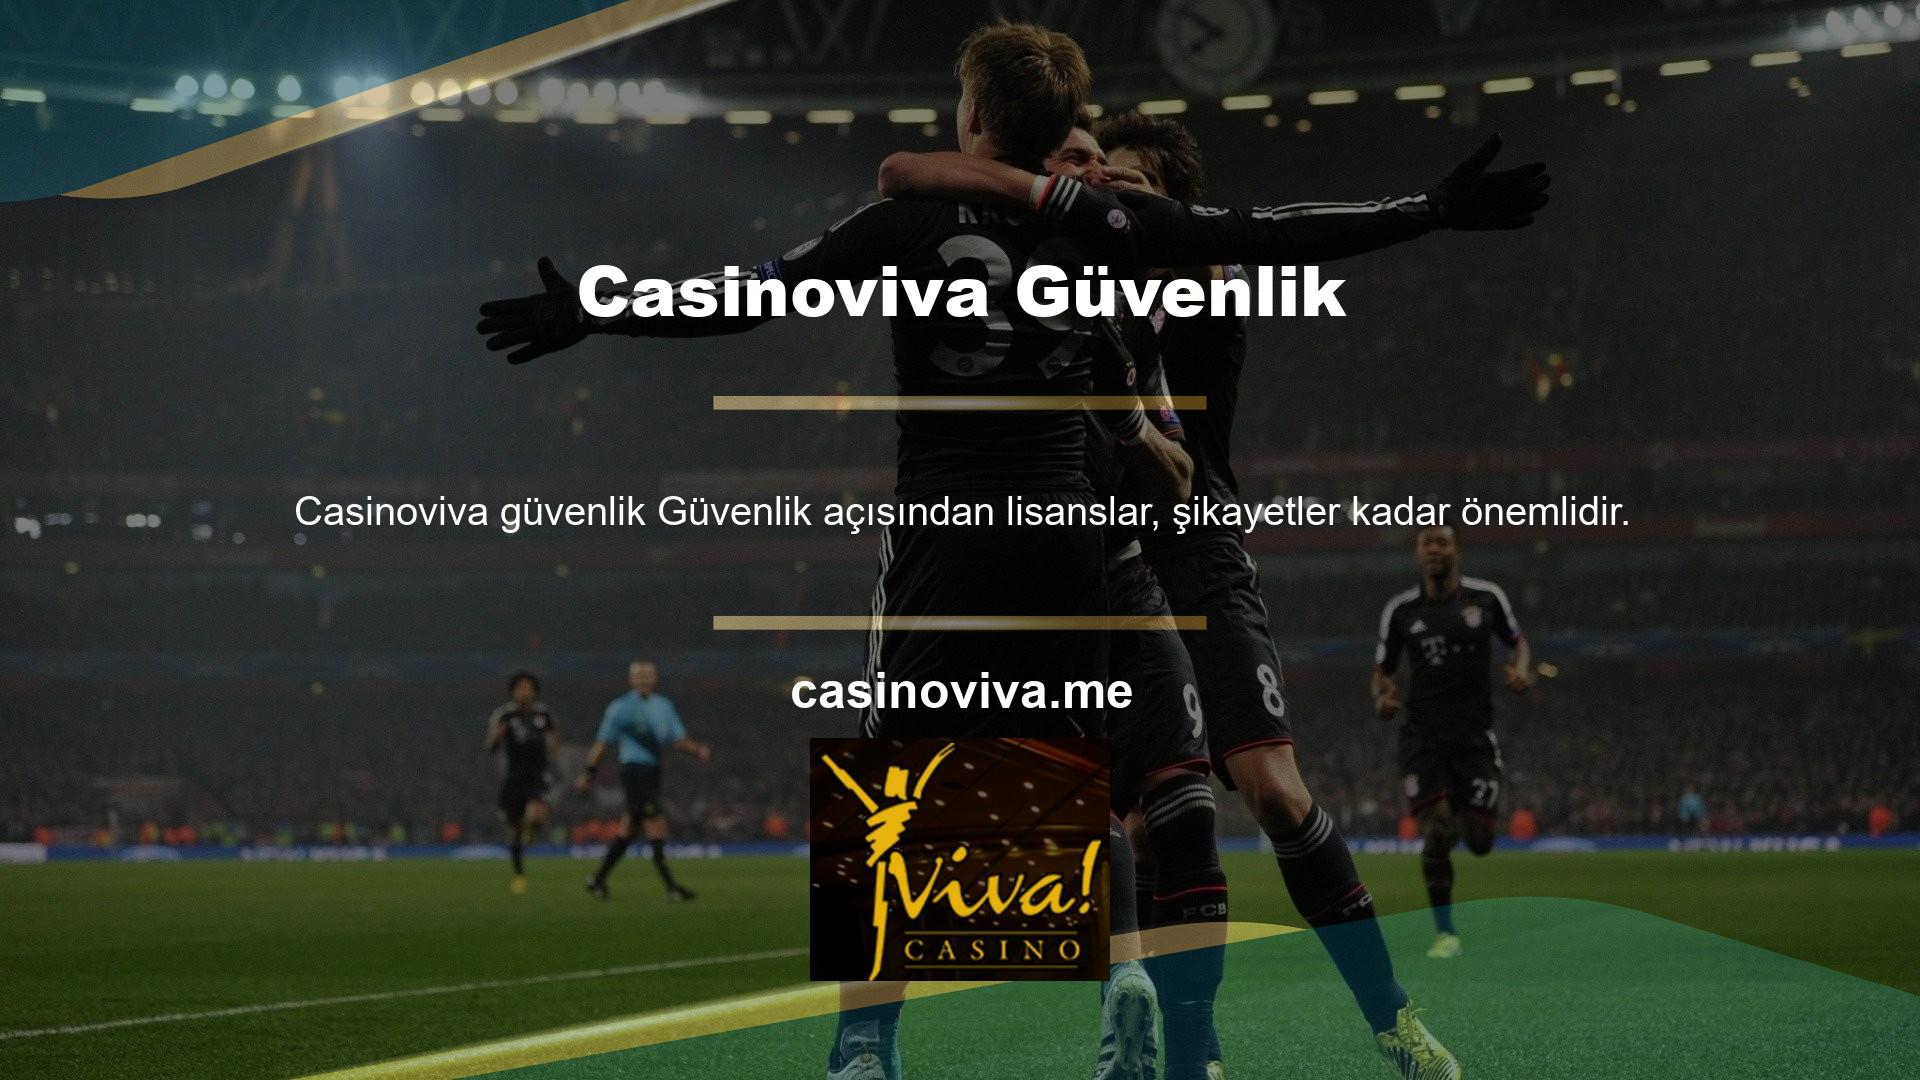 Çevrimiçi casino sitesi Casinoviva, oyunculara bu sorunun cevabını web sitelerindeki lisans bilgileri aracılığıyla sağlar